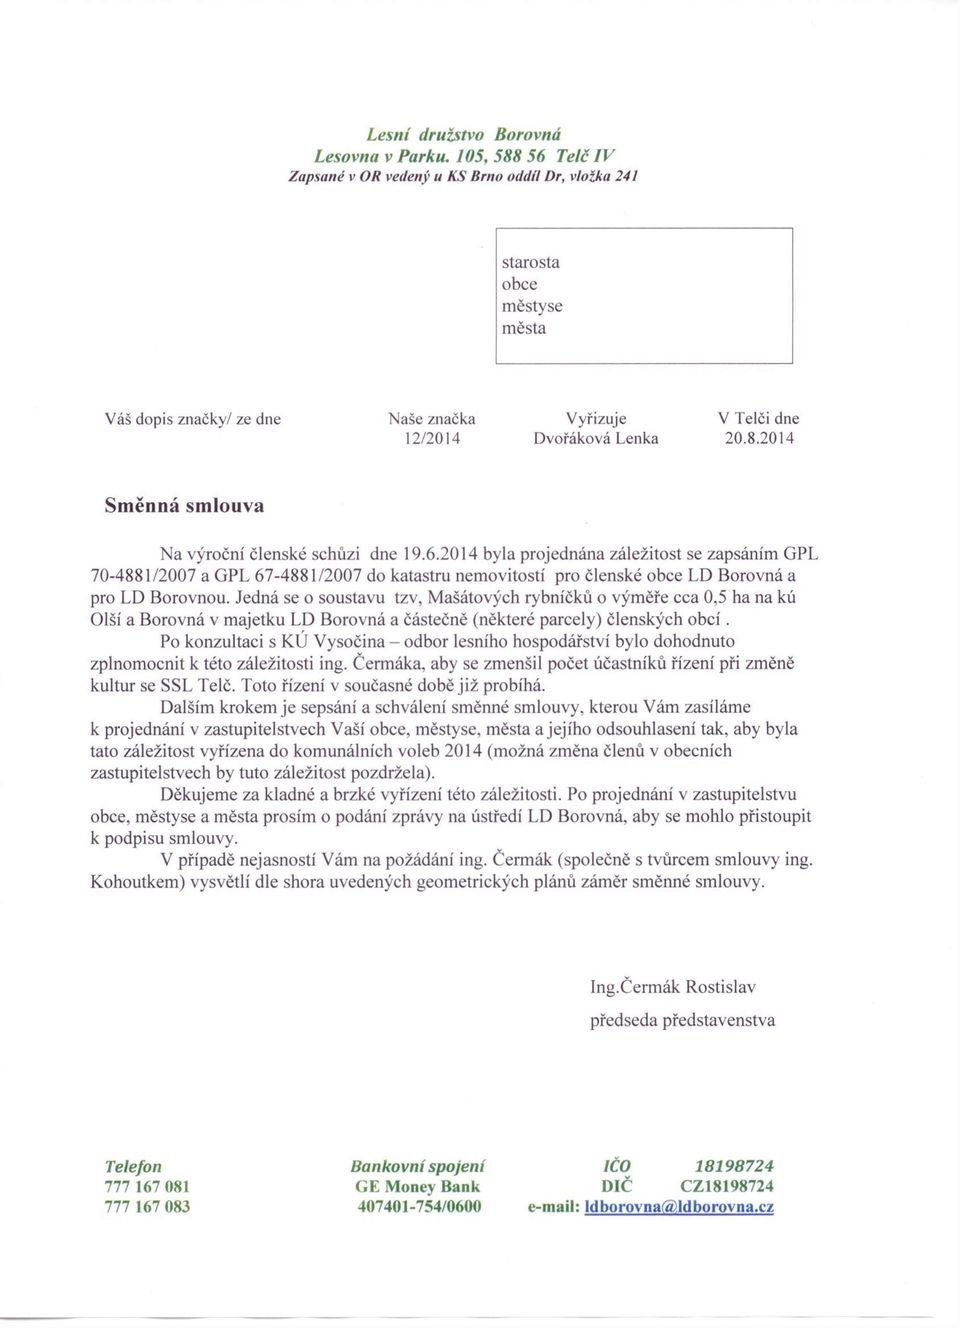 6.2014 byla projednána záležitost se zapsáním GPL 70-4881/2007 a GPL 67-488112007 do katastru nemovitostí pro členské obce LD Borovná a pro LD Borovnou.